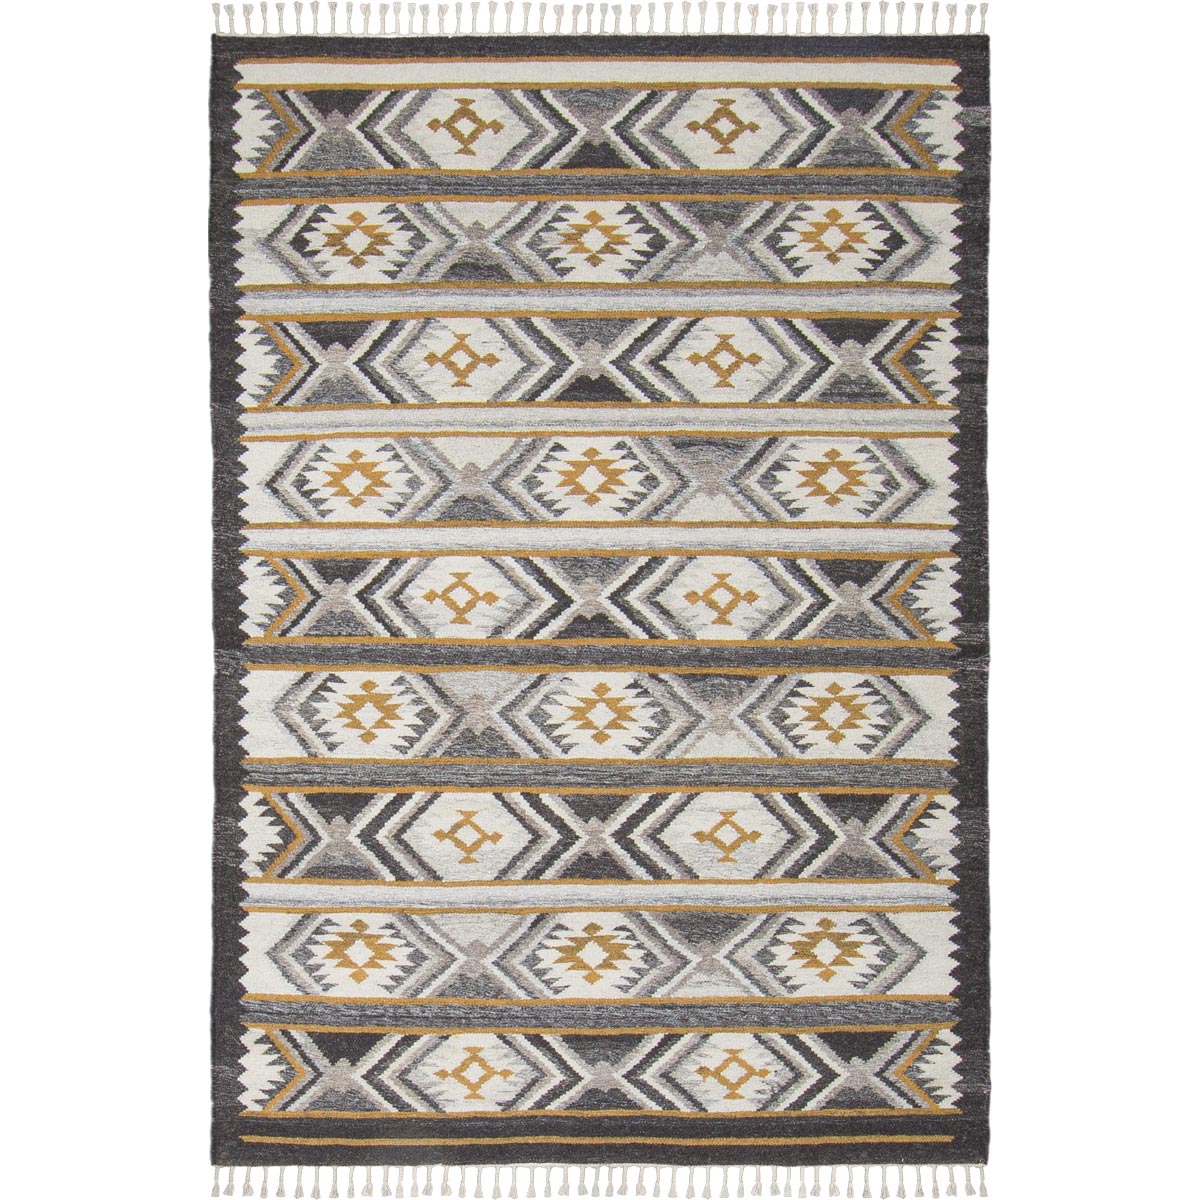 שטיח קילים סקנדינבי 15 אפור/צהוב עם פרנזים | השטיח האדום